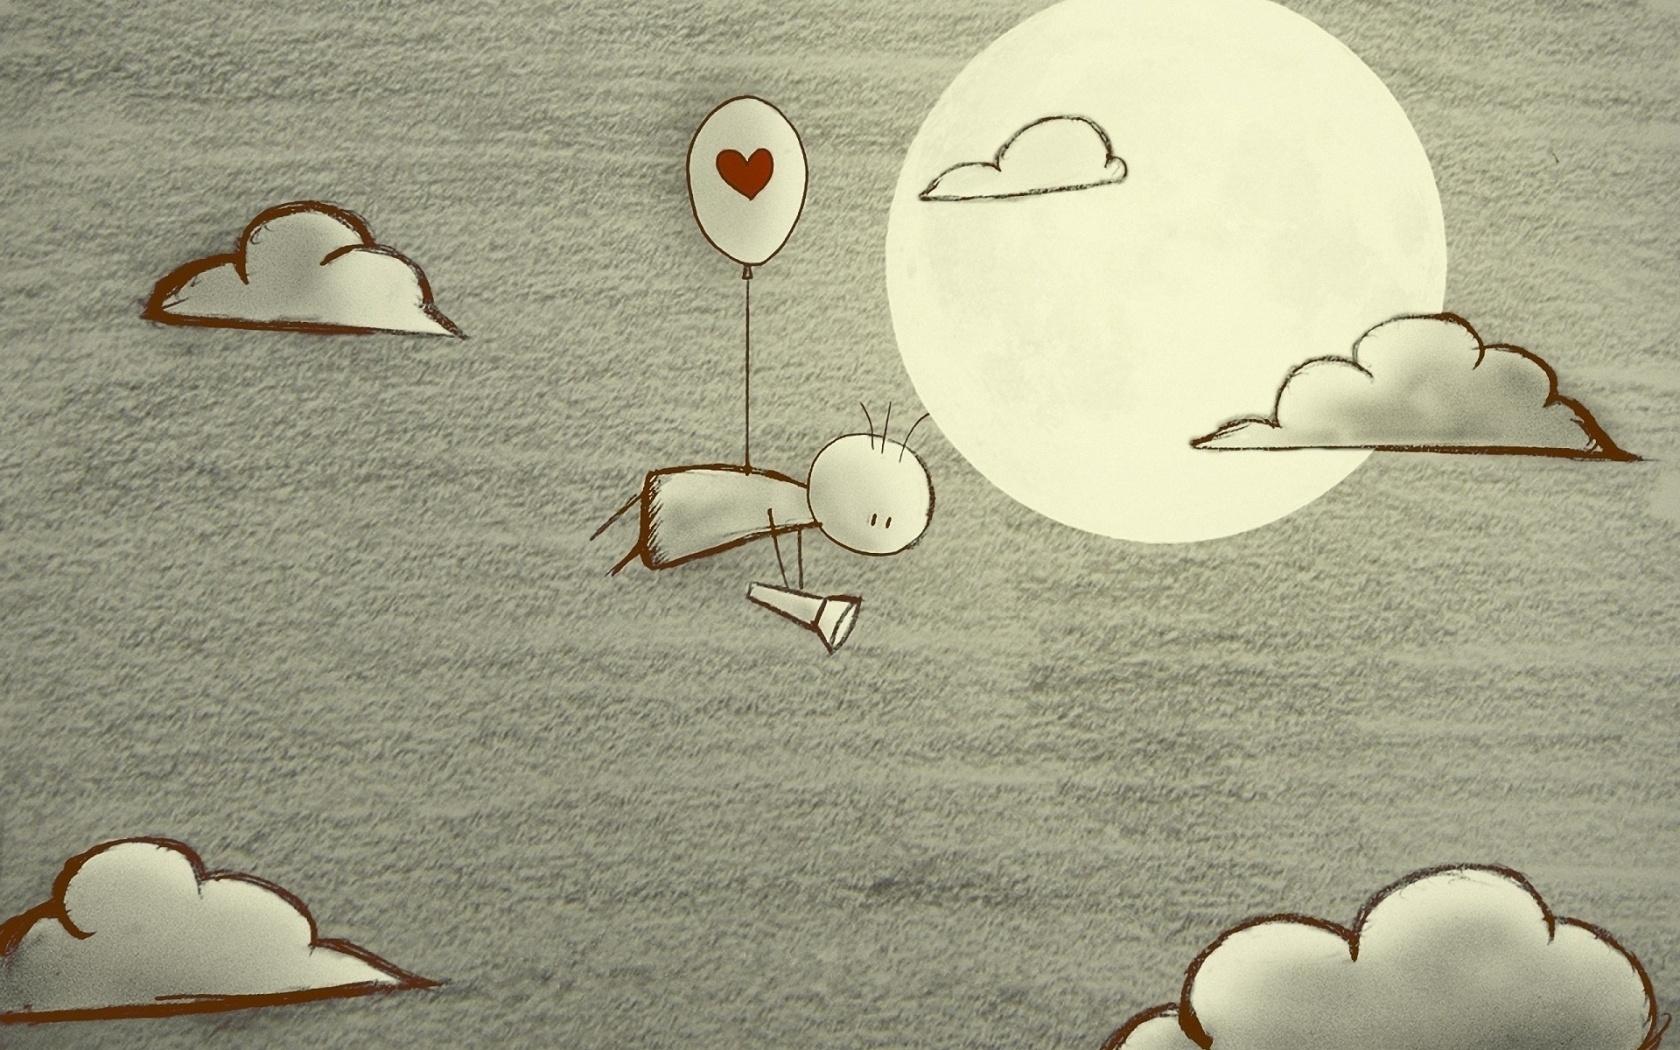 simple cute drawings of love